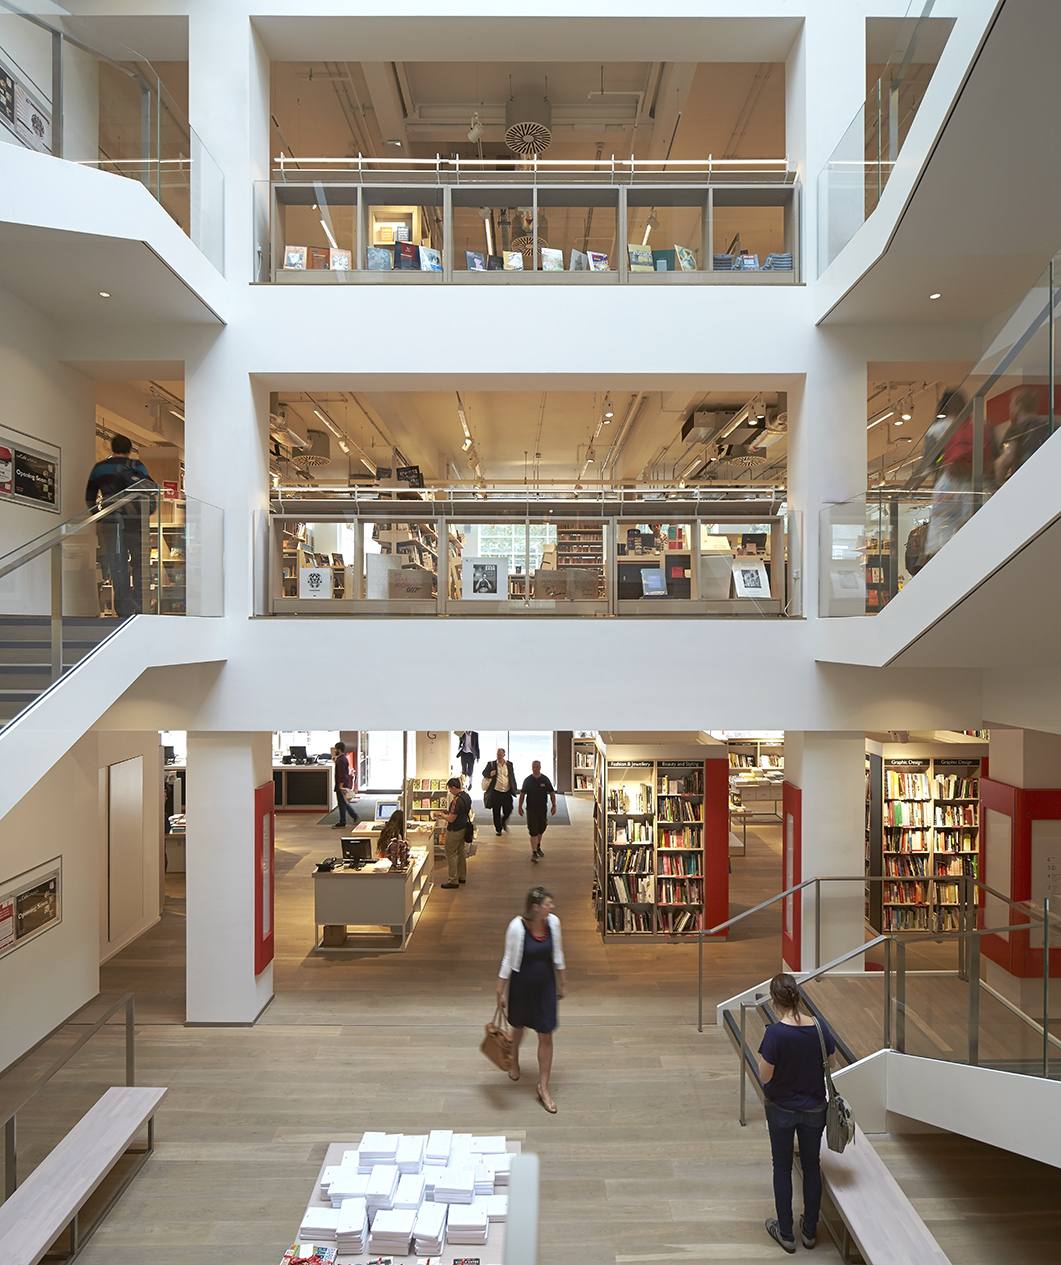 Foyles for Books, dopo 100 anni la storica libreria di Londra cambia look